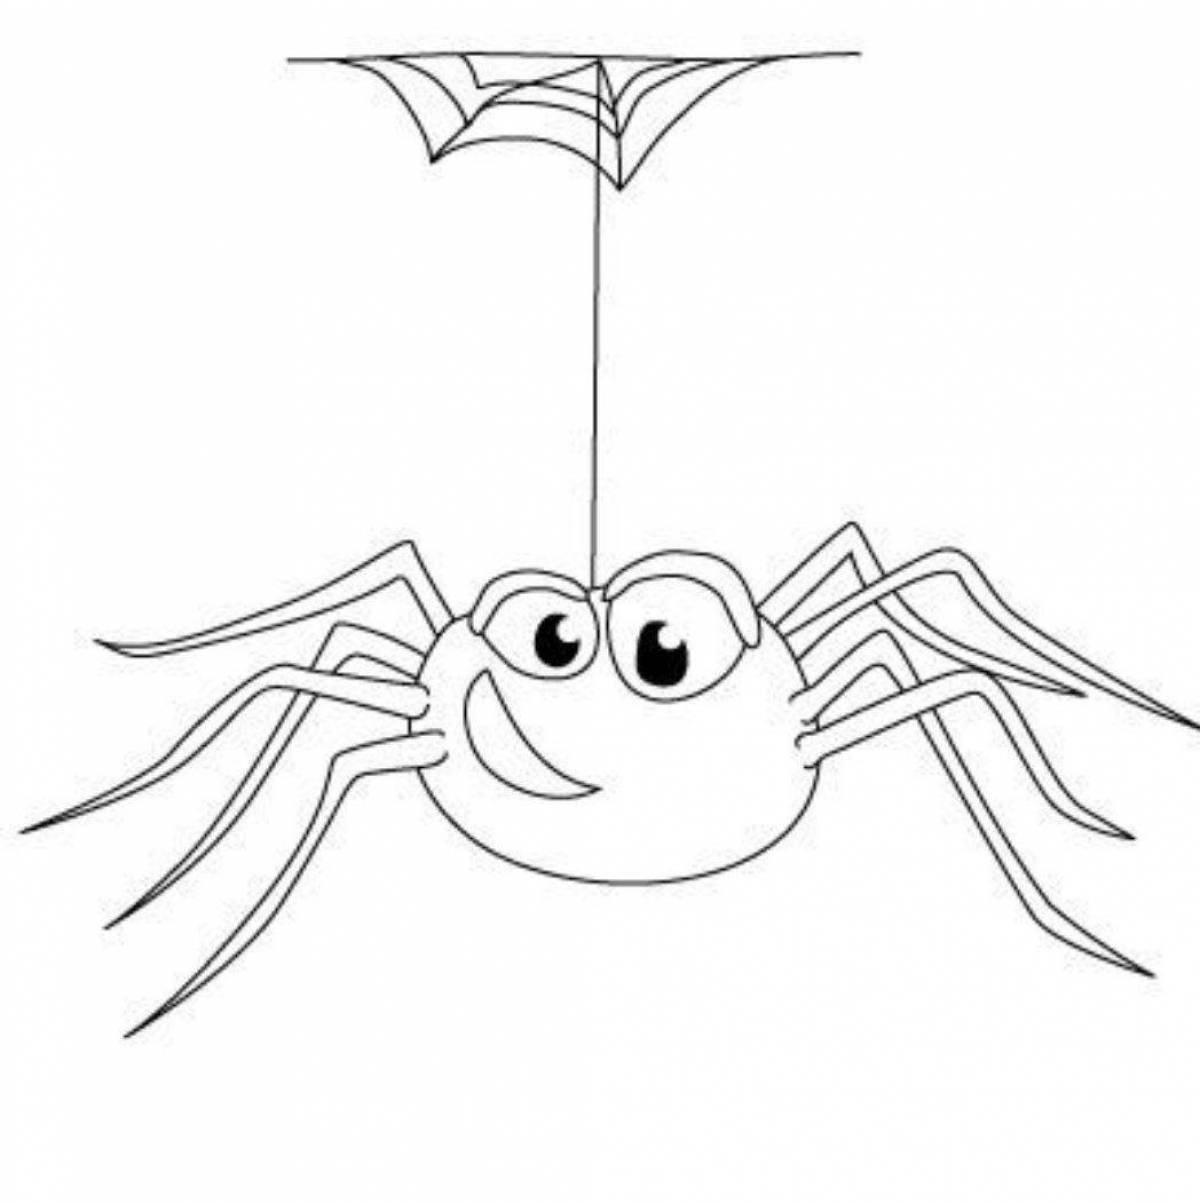 Spider cartoon #1